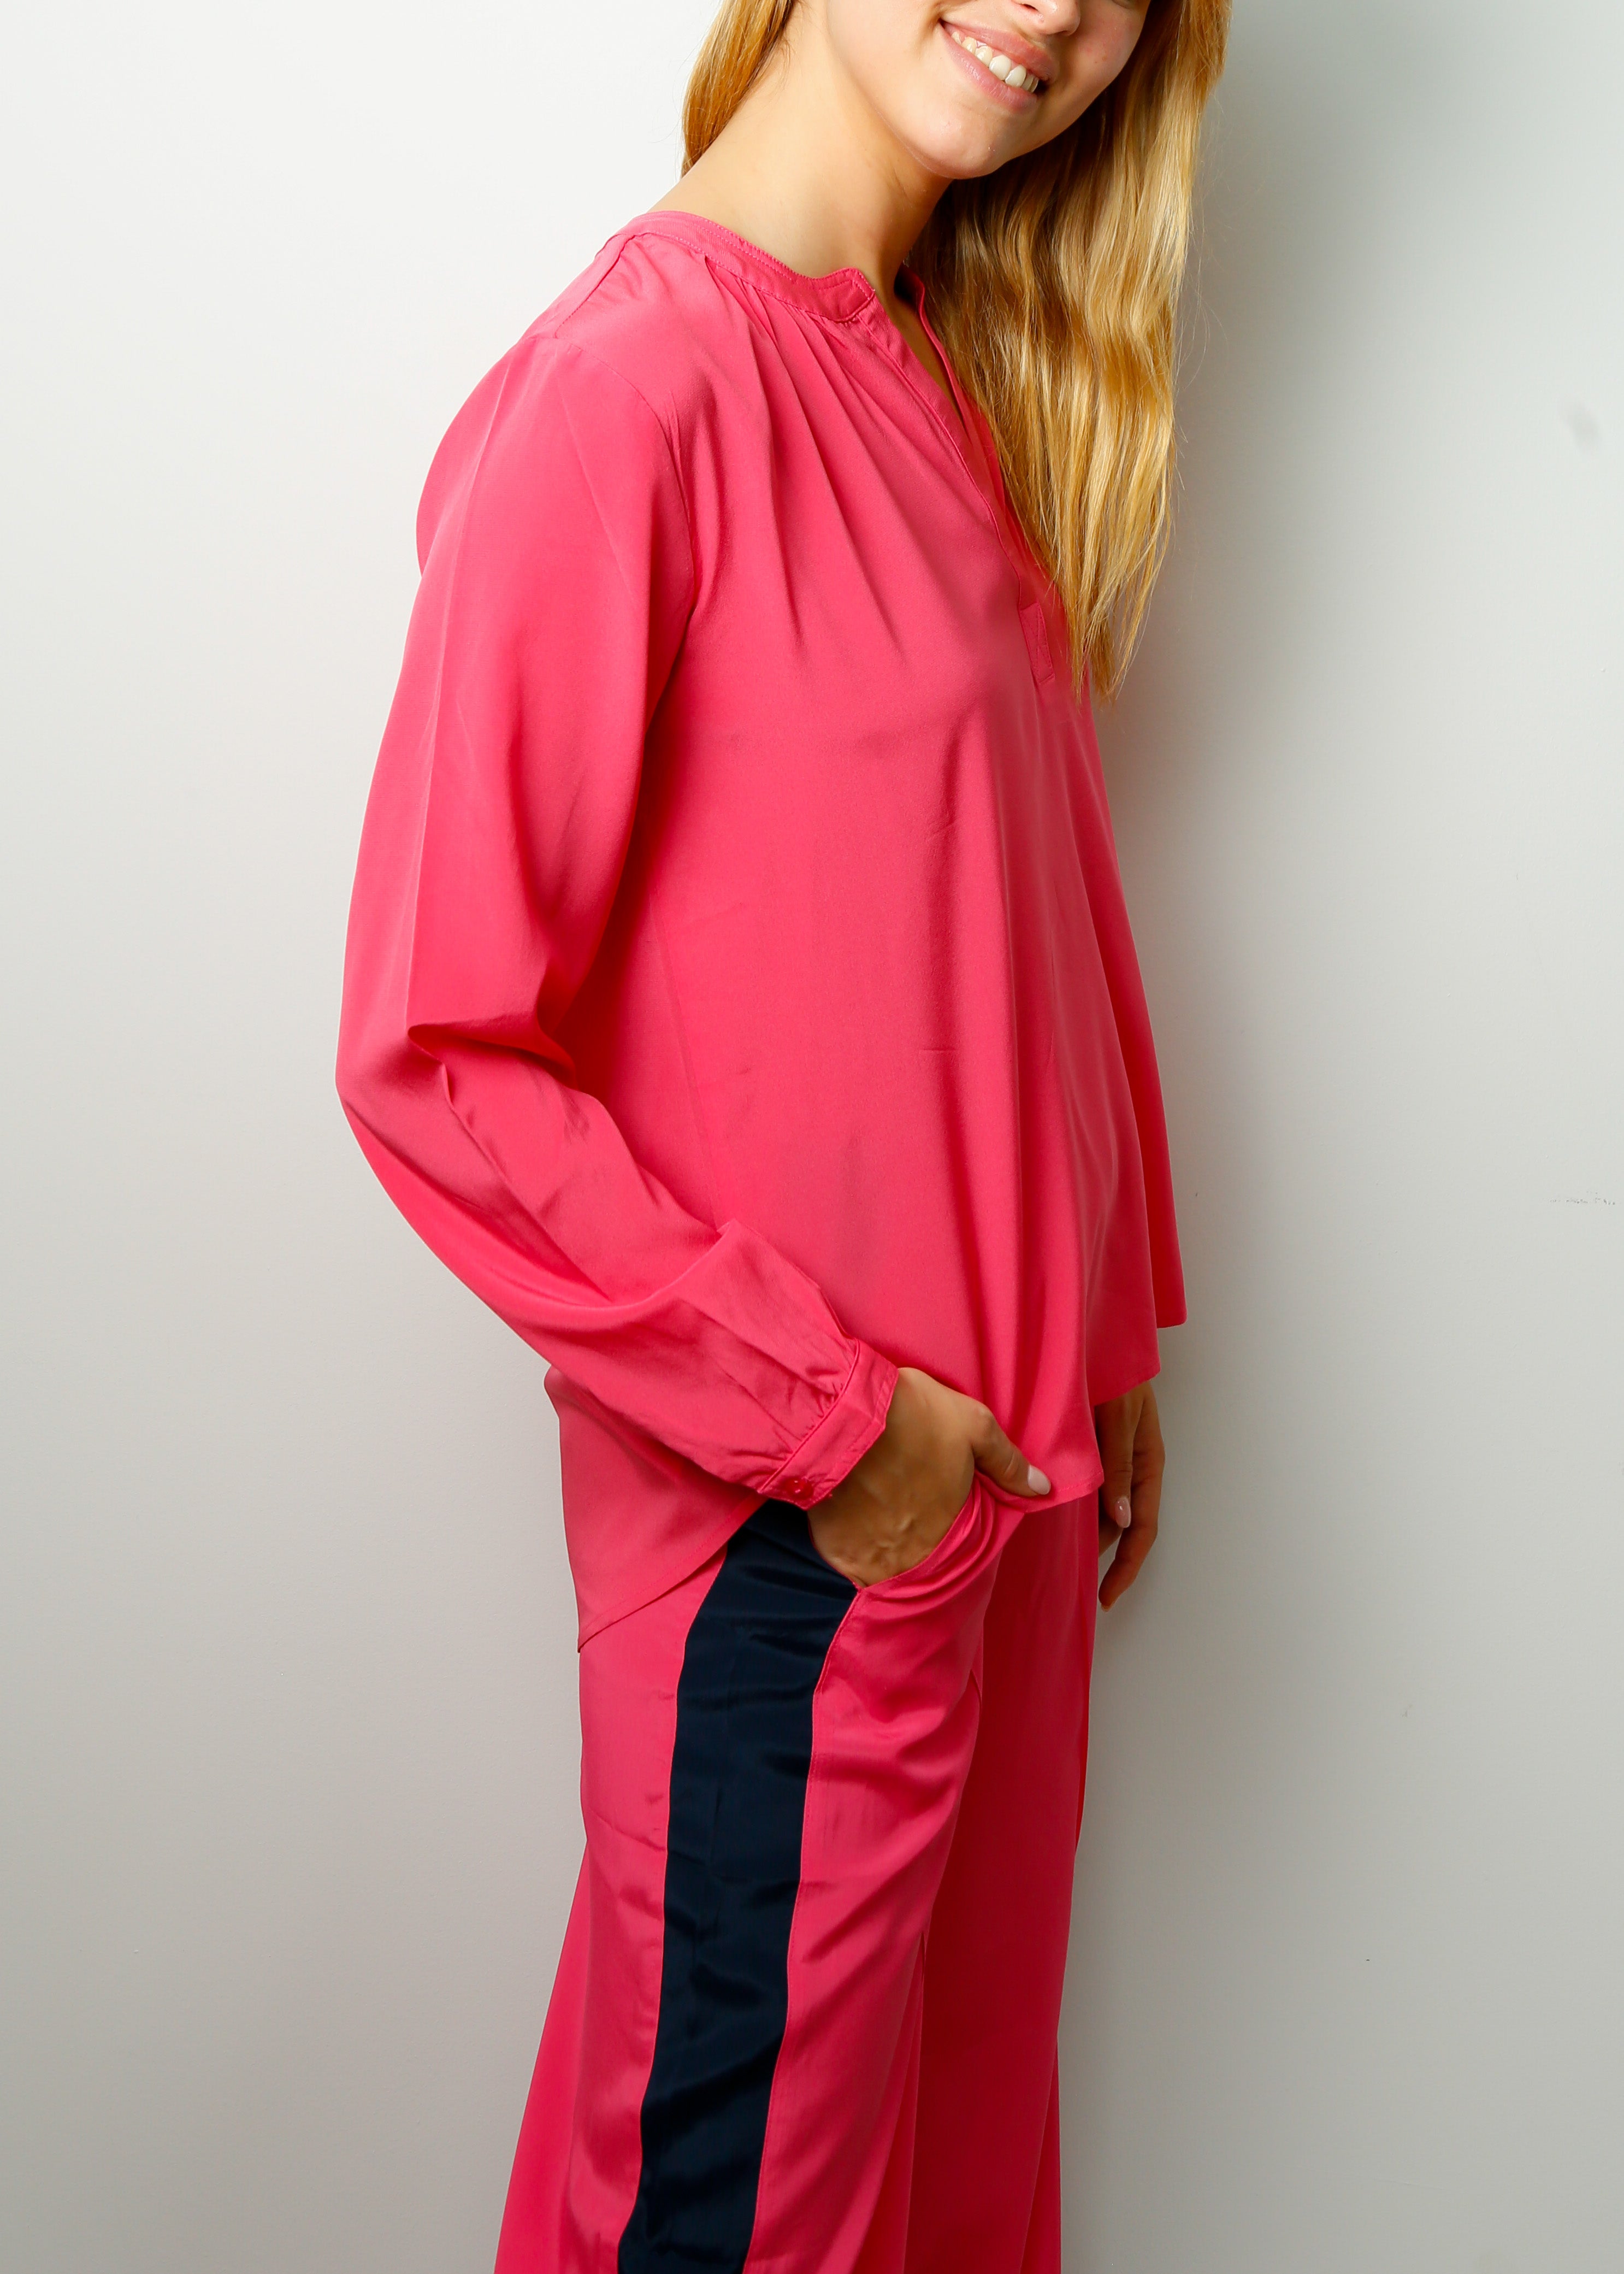 PPL Sandy Silk Shirt in Hot Pink